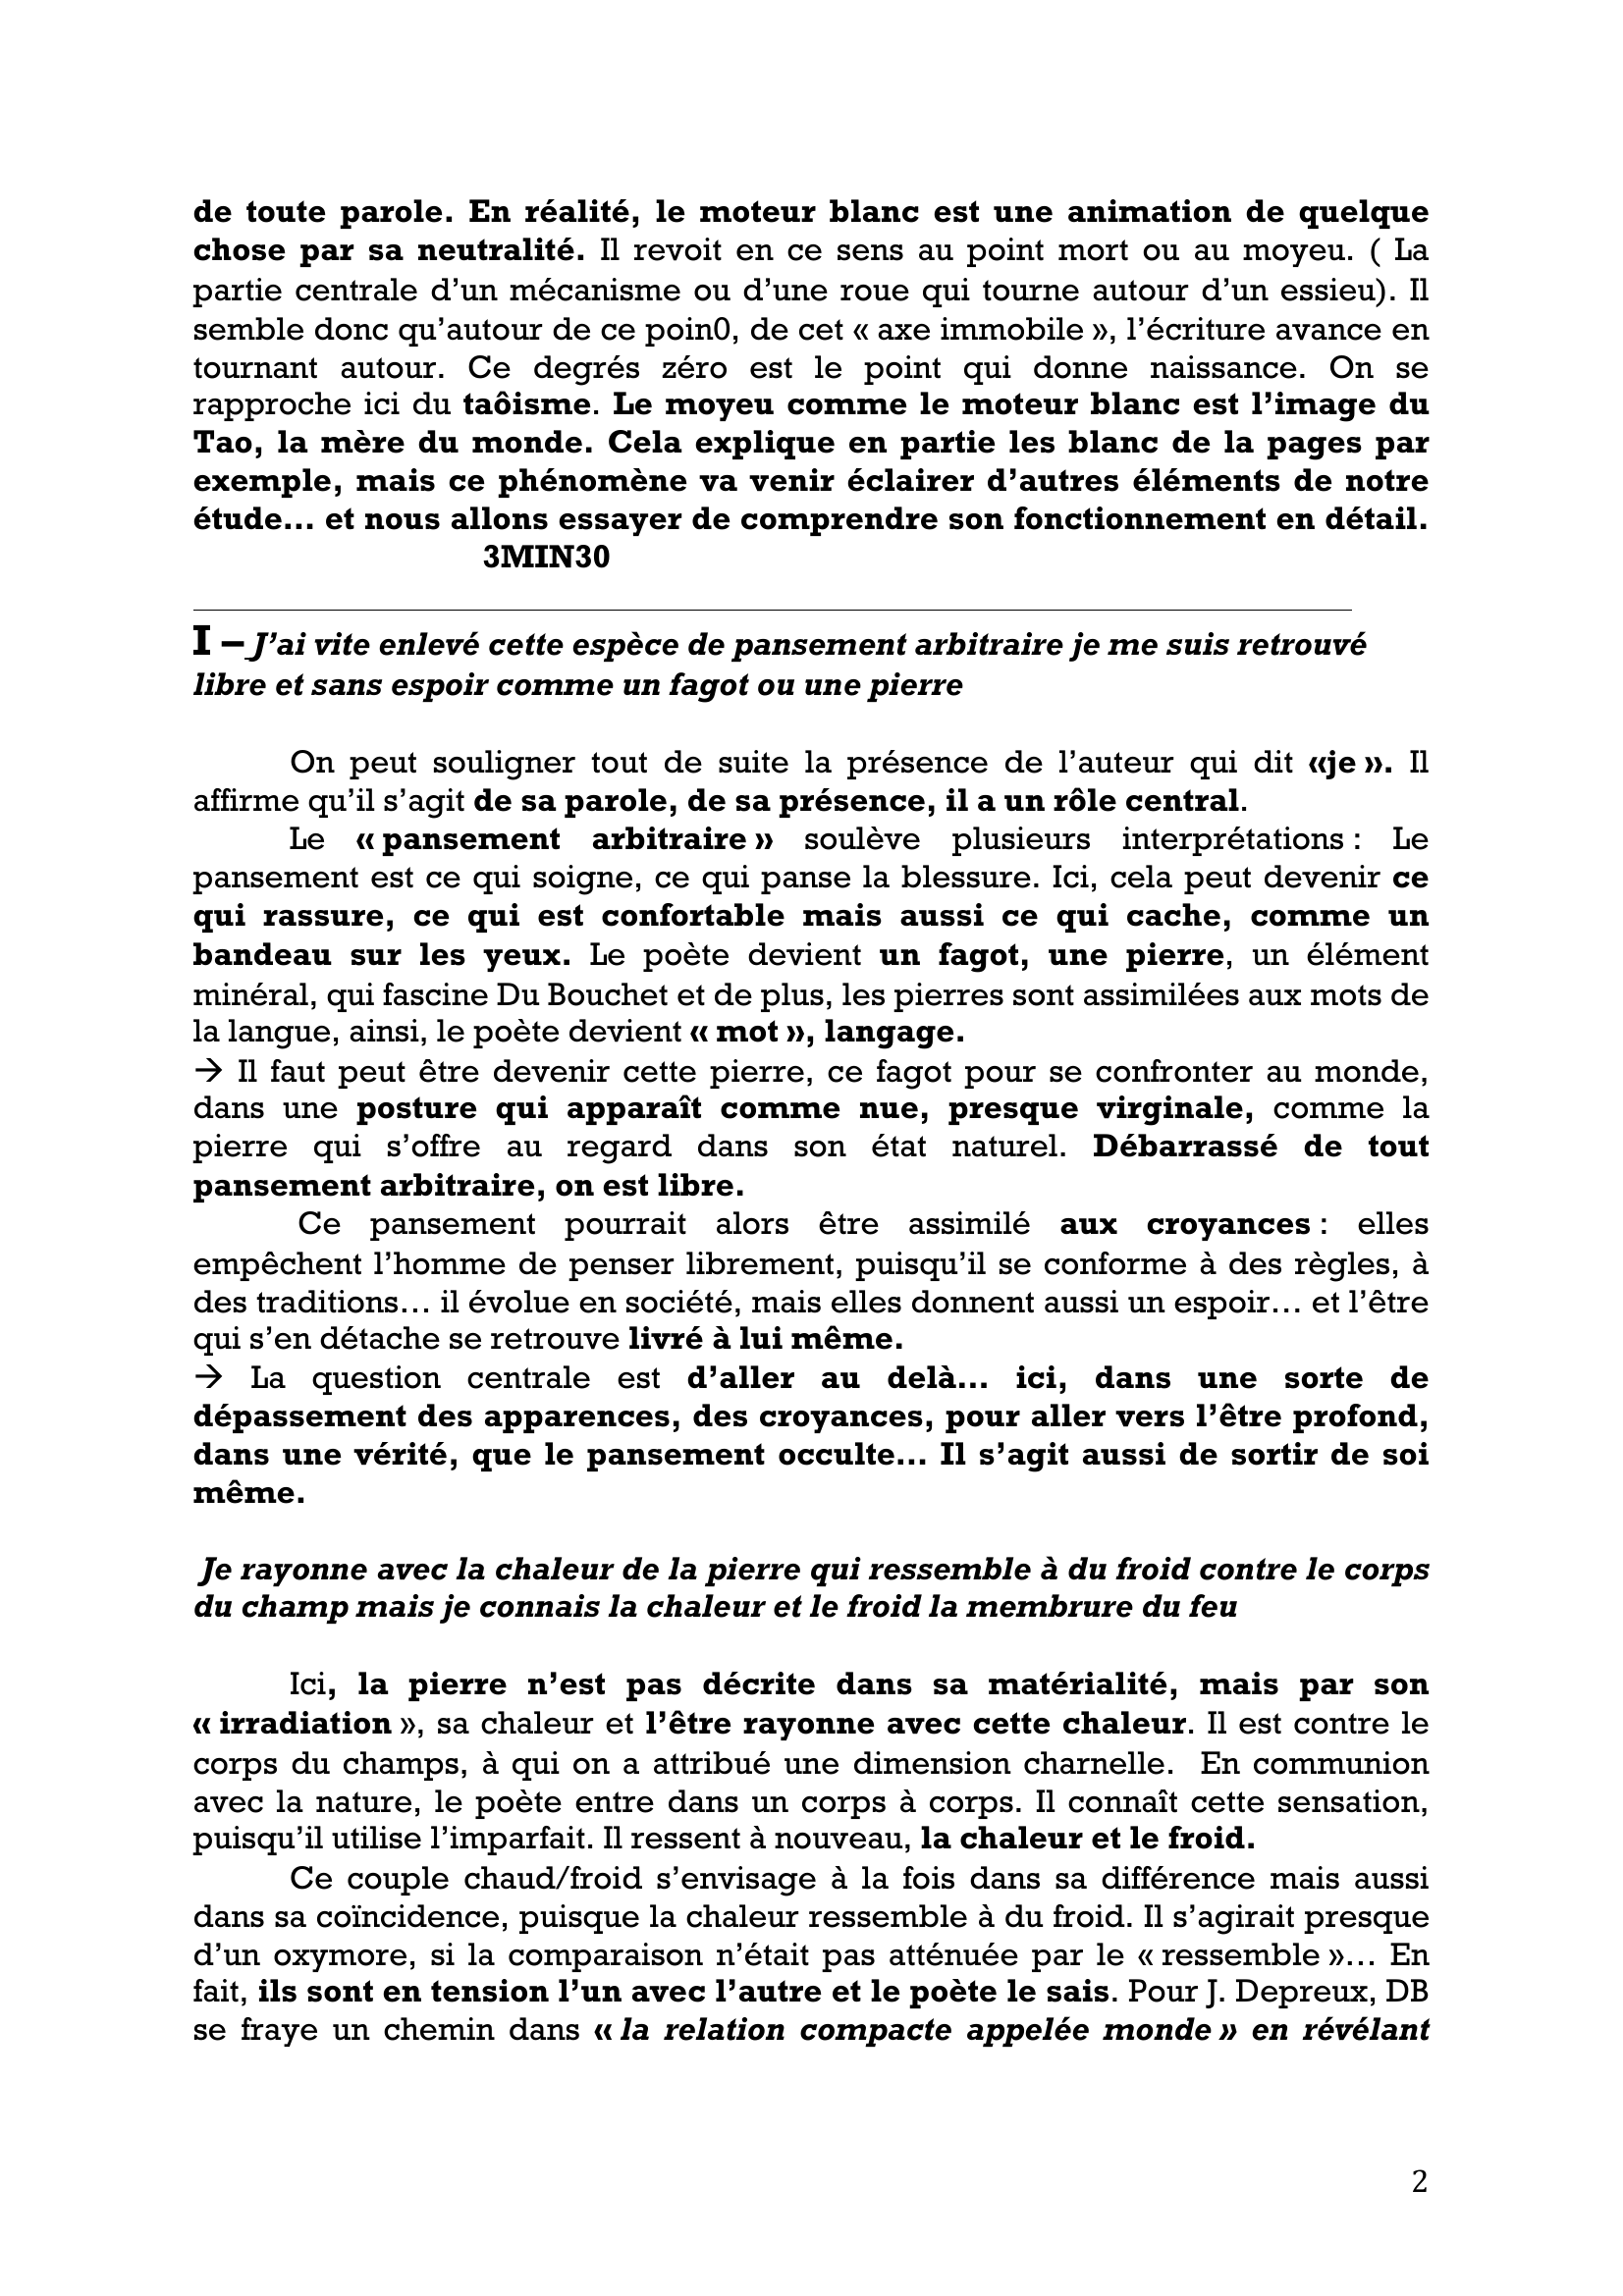 Prévisualisation du document « Le Moteur Blanc » D'André Du Bouchet